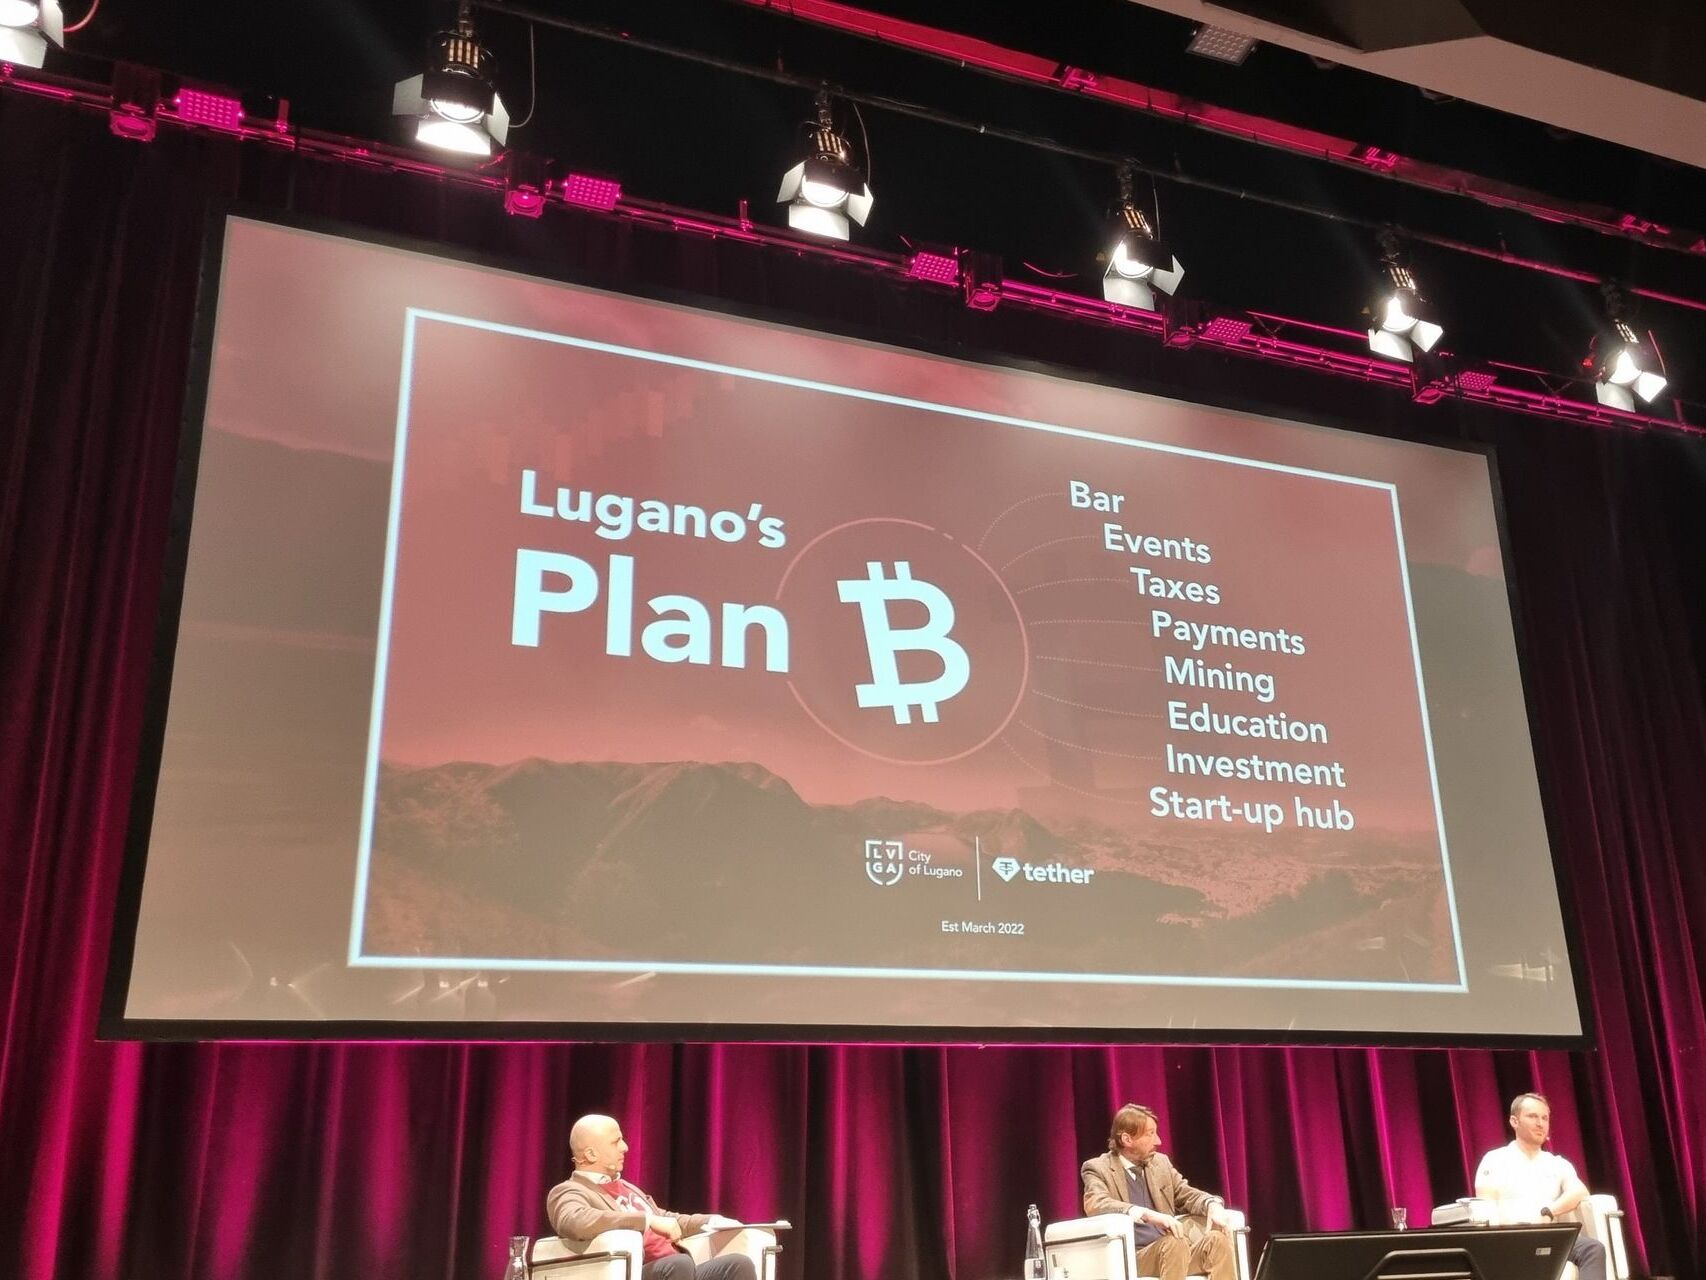 ການນໍາສະເຫນີ, ໃນວັນທີ 3 ມີນາ 2022 ທີ່ສູນປະຊຸມ, ຂອງການຮ່ວມມືລະຫວ່າງເມືອງ Lugano ແລະ Tether Operations Limited: "Plan B" ມີຈຸດປະສົງເພື່ອສ້າງສູນກາງເອີຣົບທີ່ດີເລີດສໍາລັບການຮັບຮອງເອົາ cryptocurrencies ແລະເທກໂນໂລຍີ Blockchain.